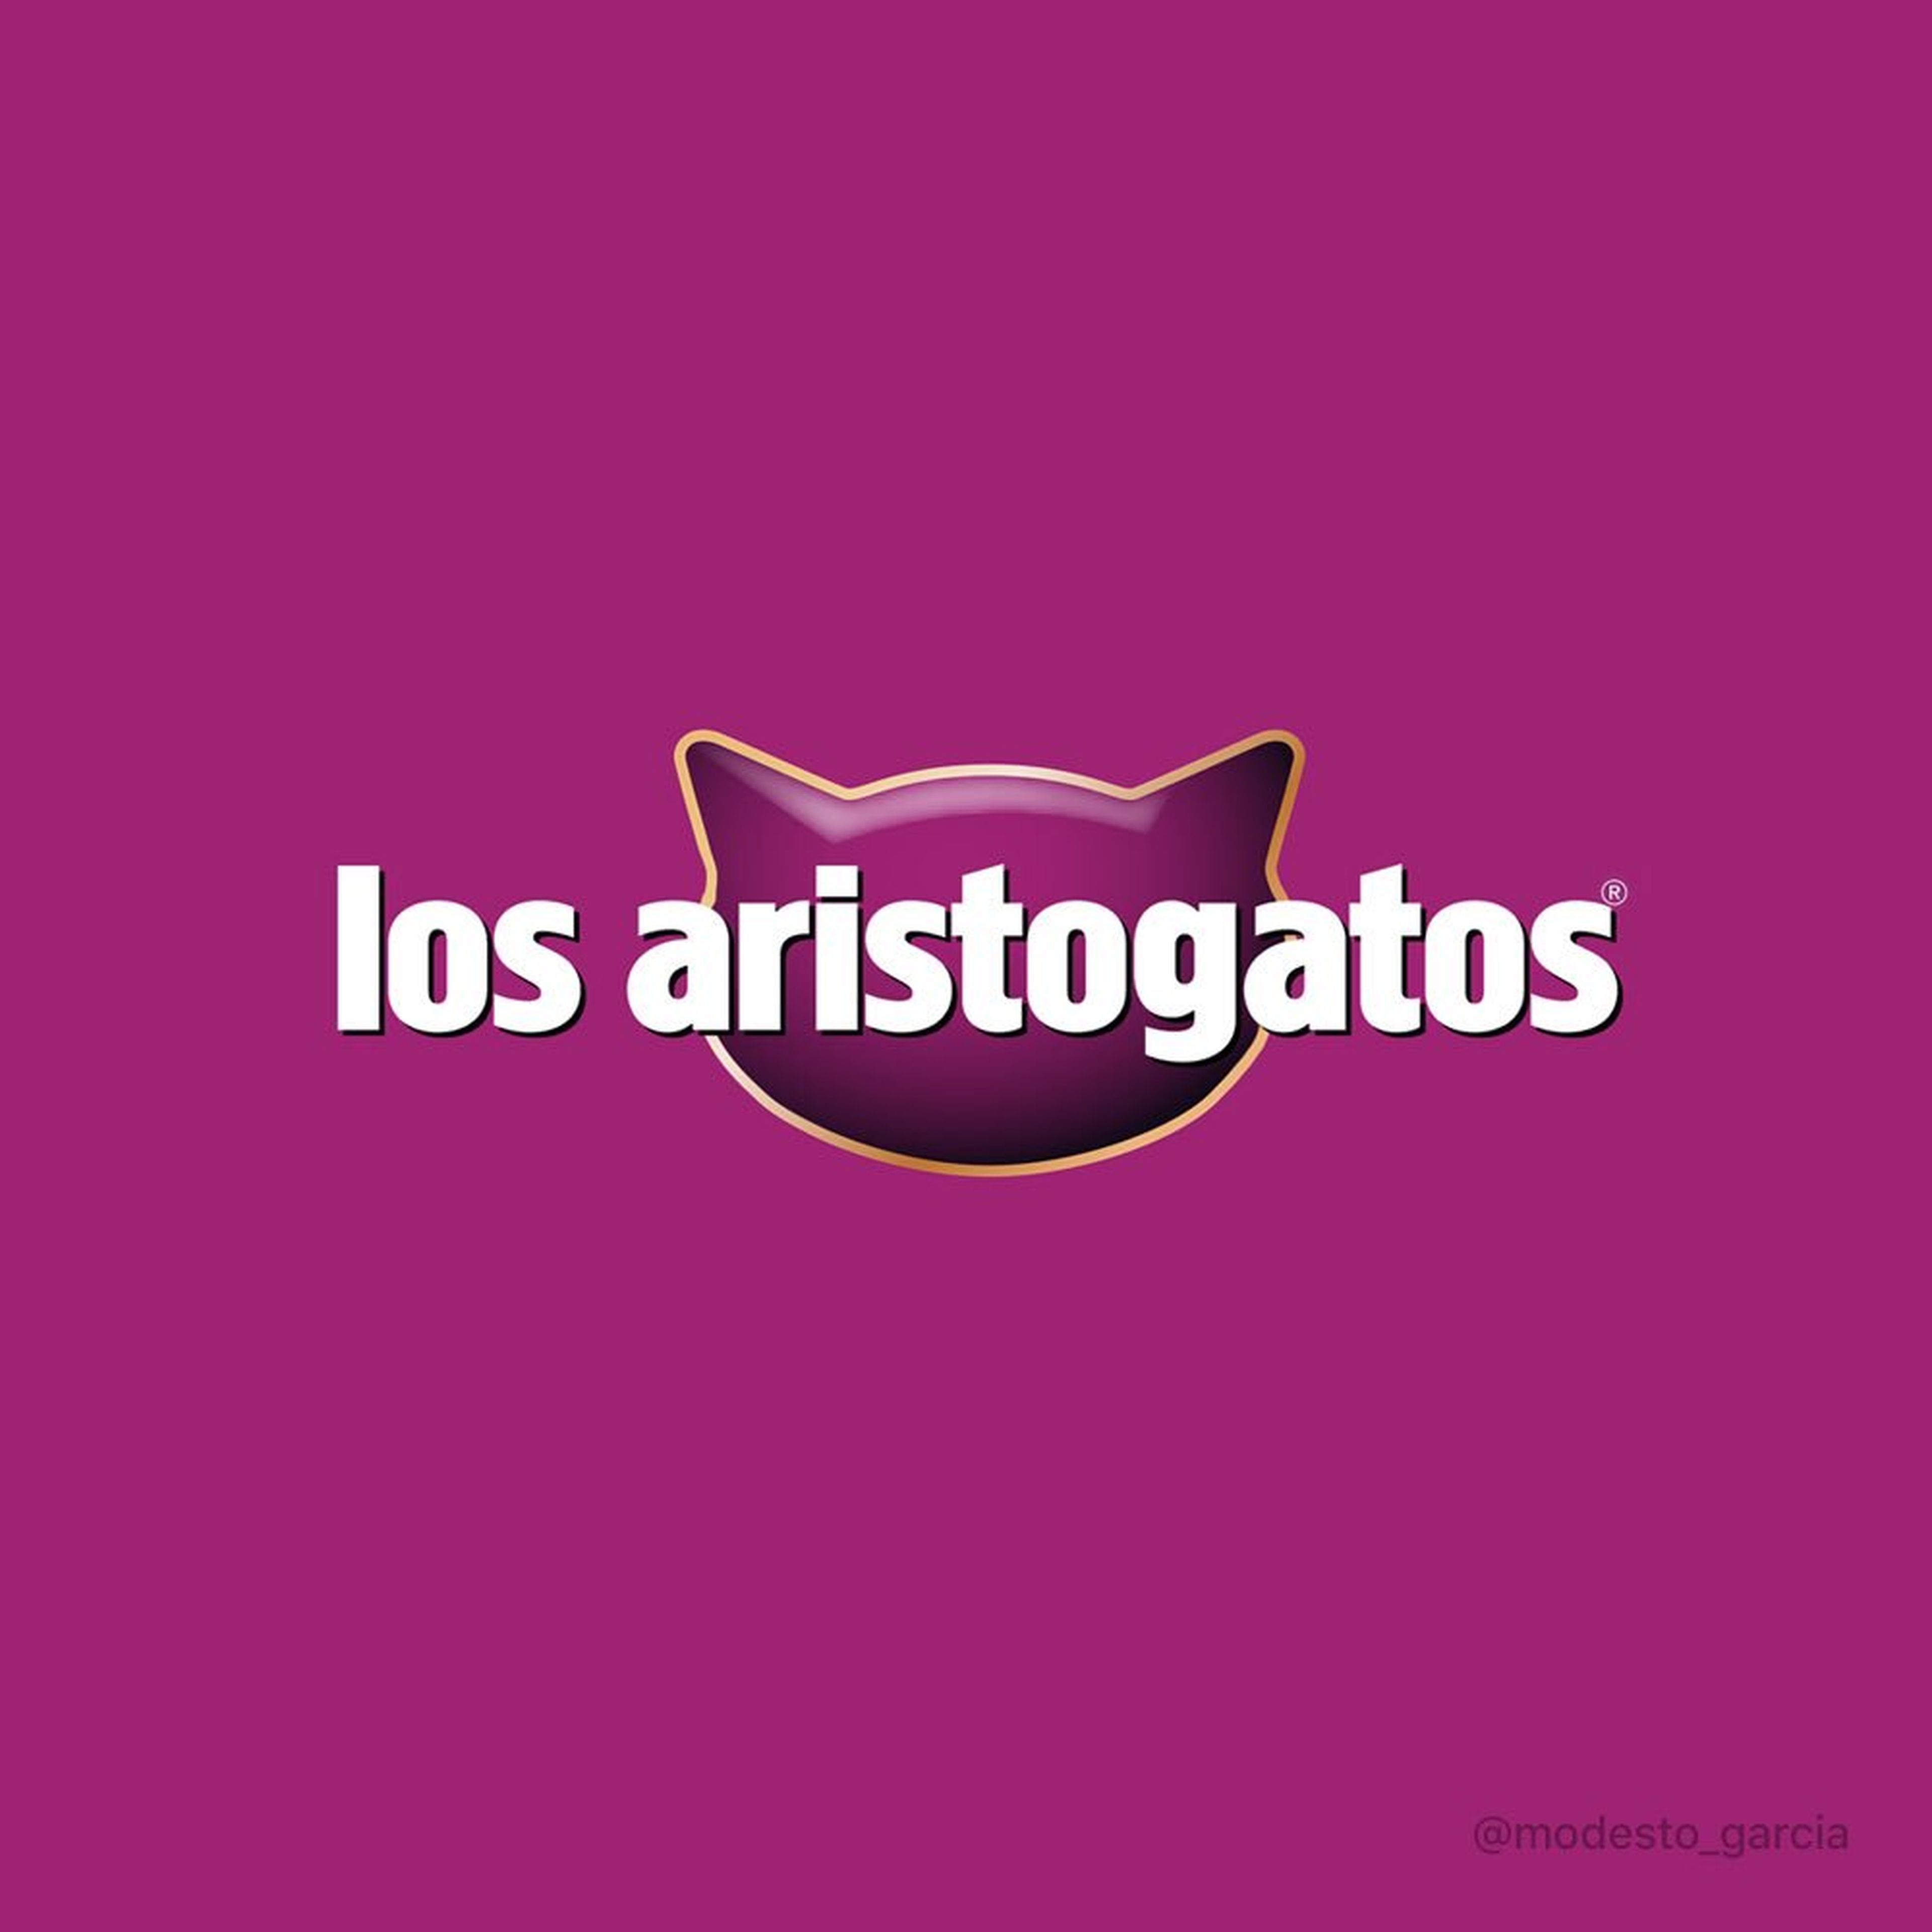 Si Los Aristogatos fuera un logo